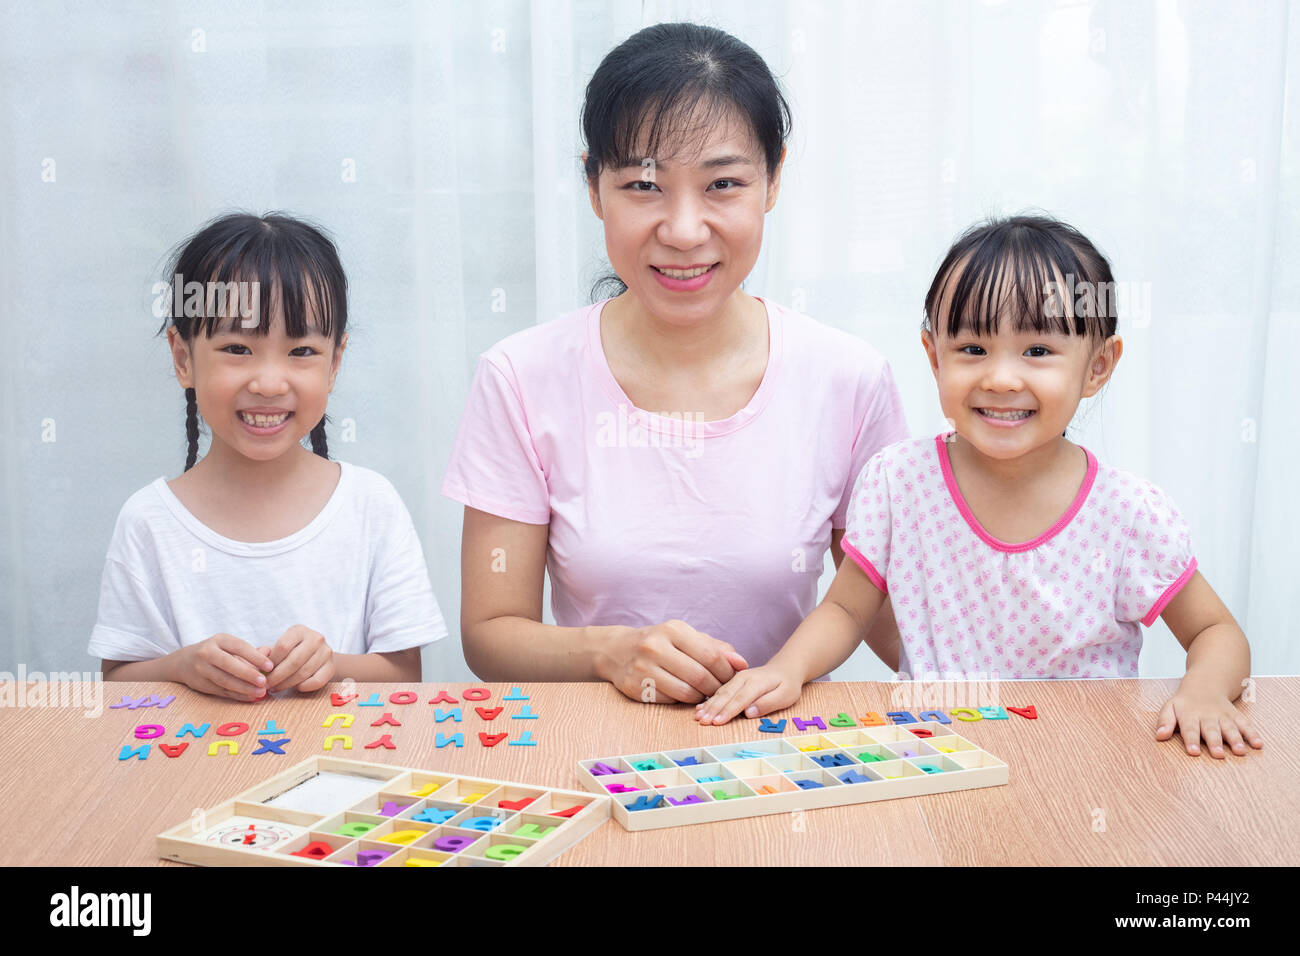 La famille chinoise asiatique jouant avec l'alphabet en bois coloré à la maison des jouets Banque D'Images